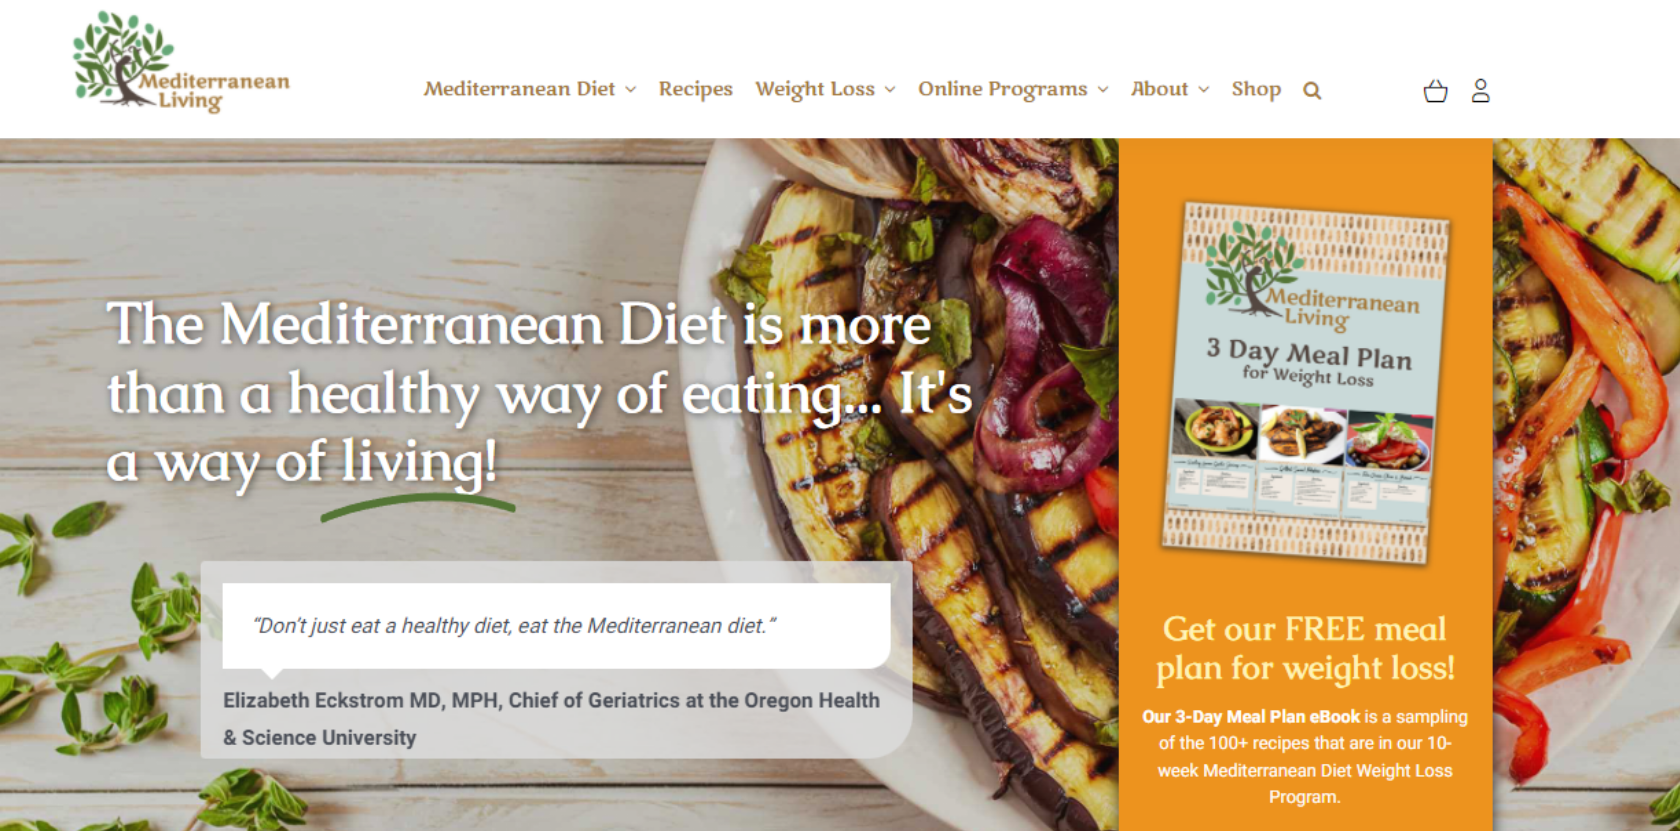 Mediterranean Living food blog homepage